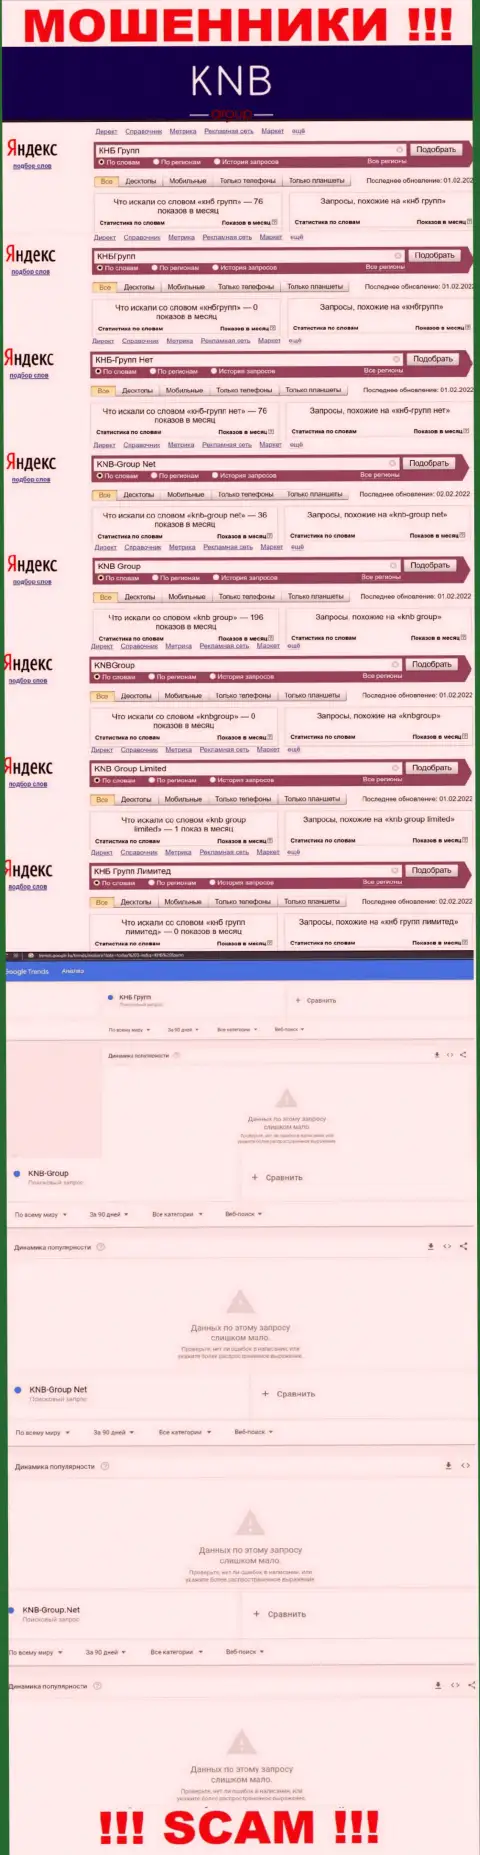 Скрин результата online-запросов по мошеннической конторе KNB-Group Net